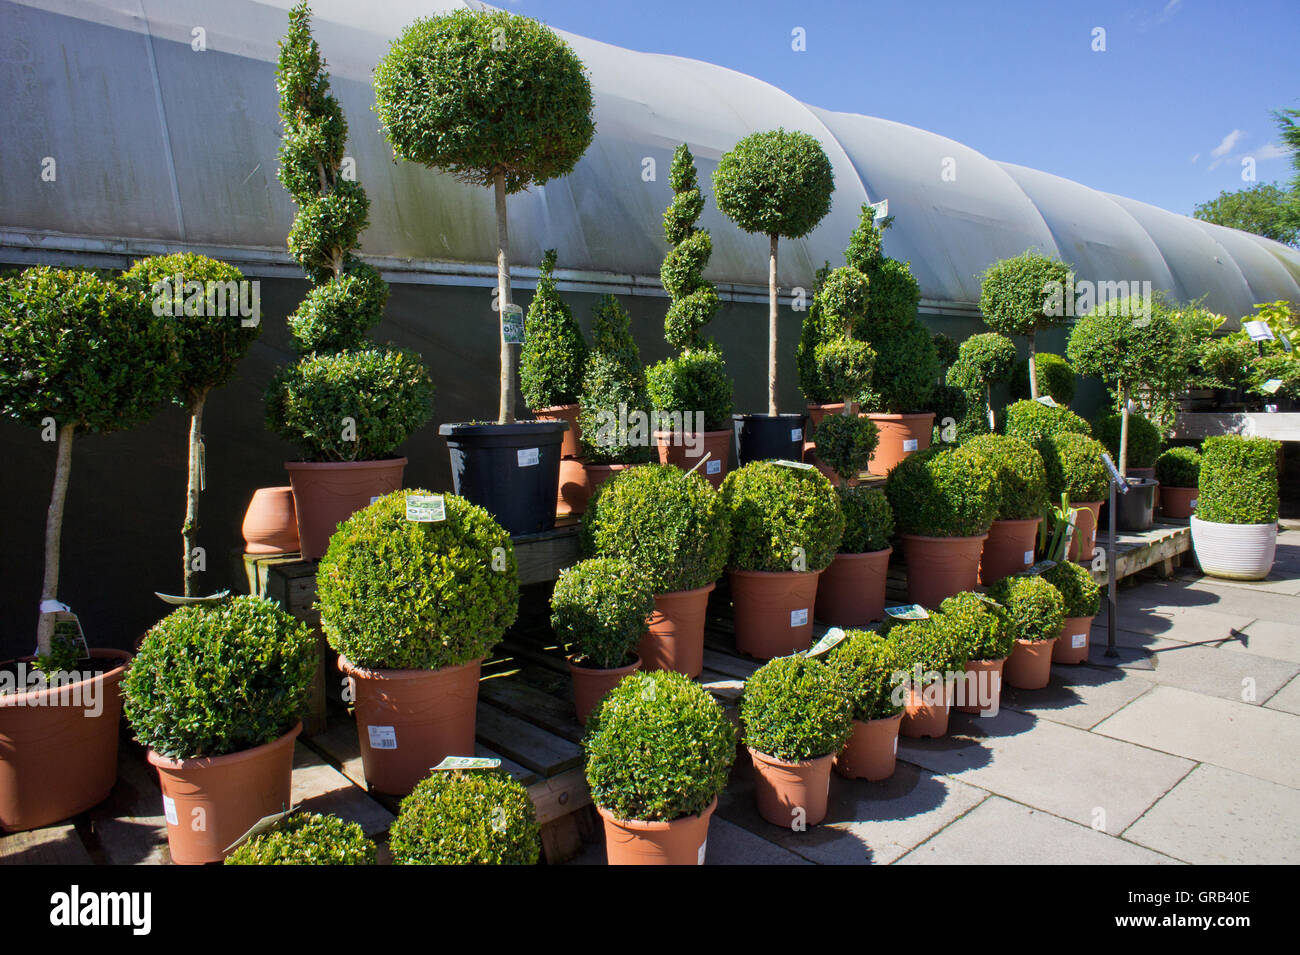 Arbustos de hoja perenne fotografías e imágenes de alta resolución - Alamy